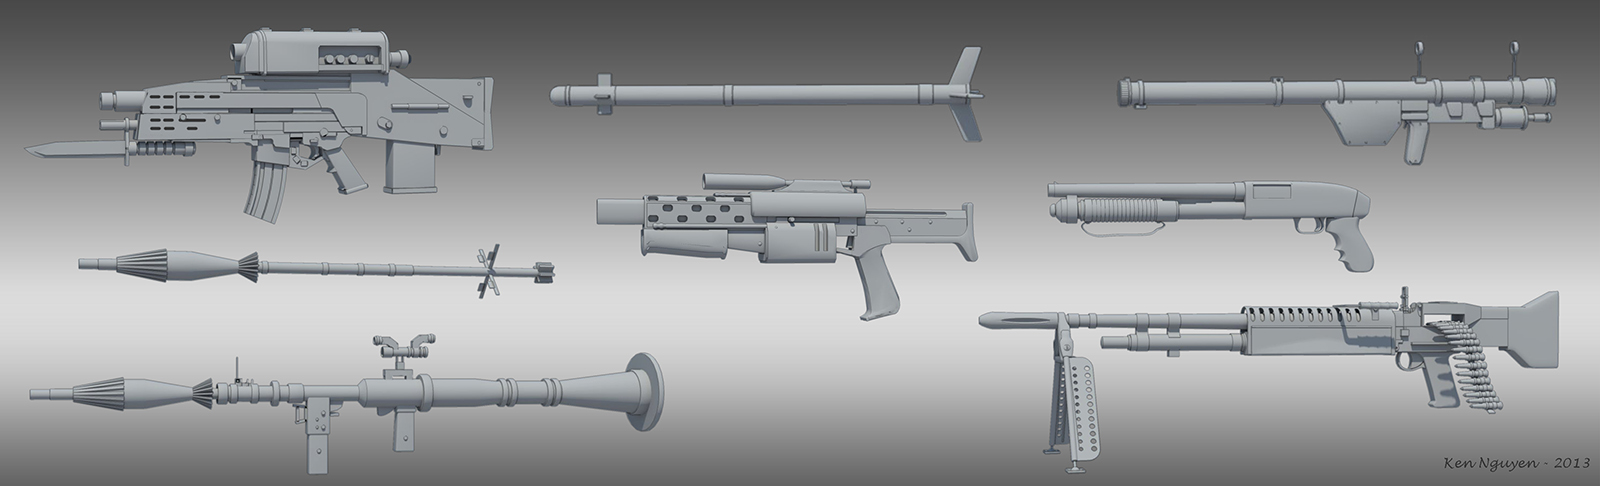 Gun_concepts_03.jpg